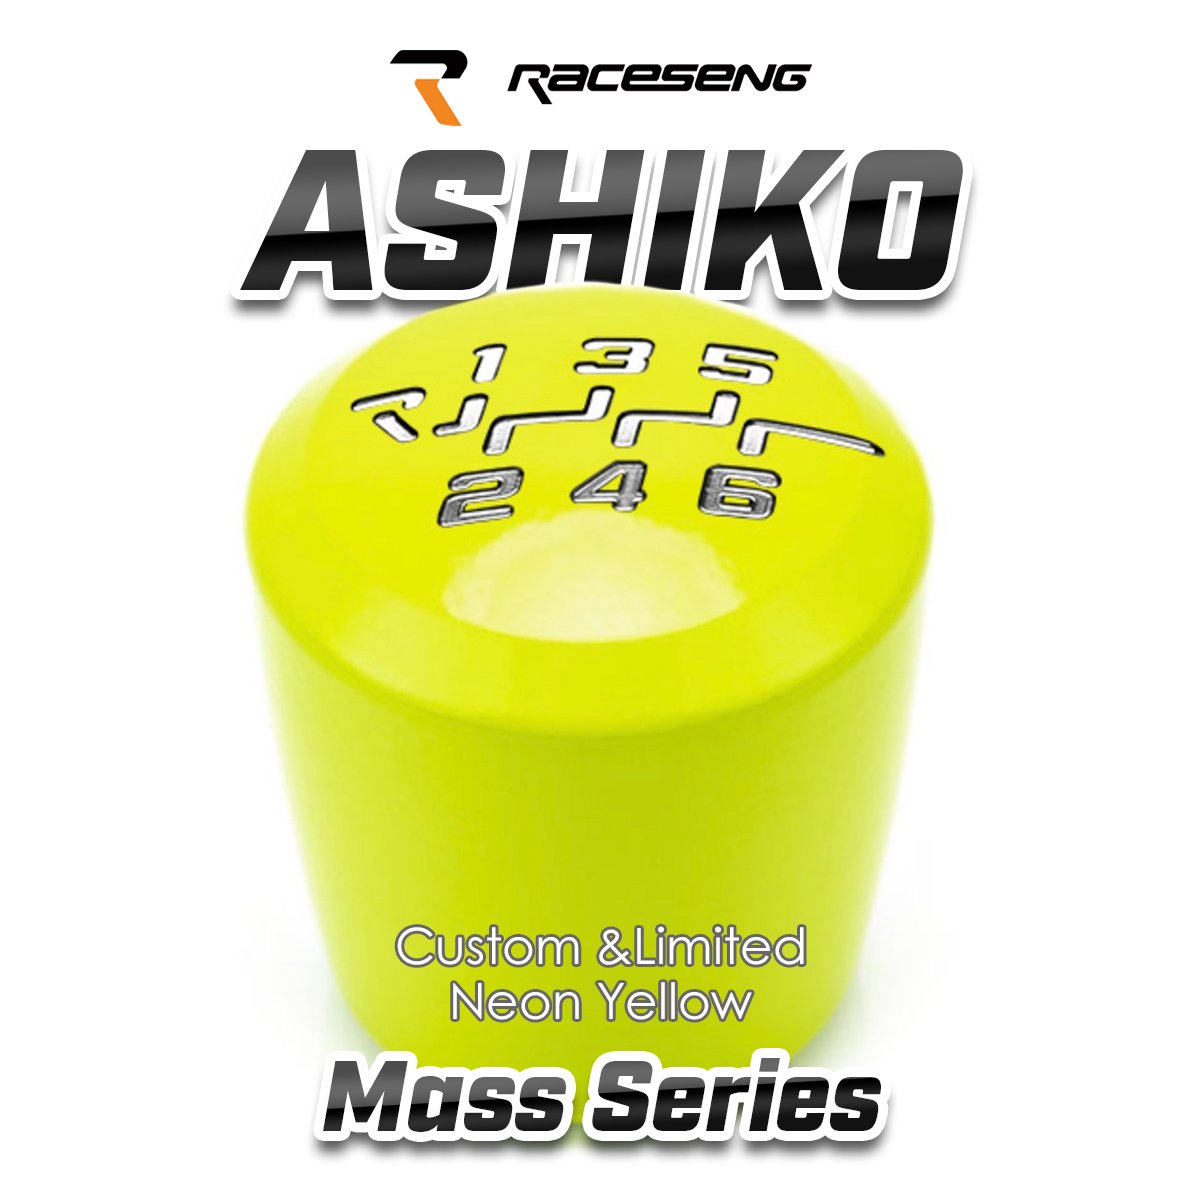 RACESENG レースセングシフトノブ MASSシリーズ ASHIKO アシコ